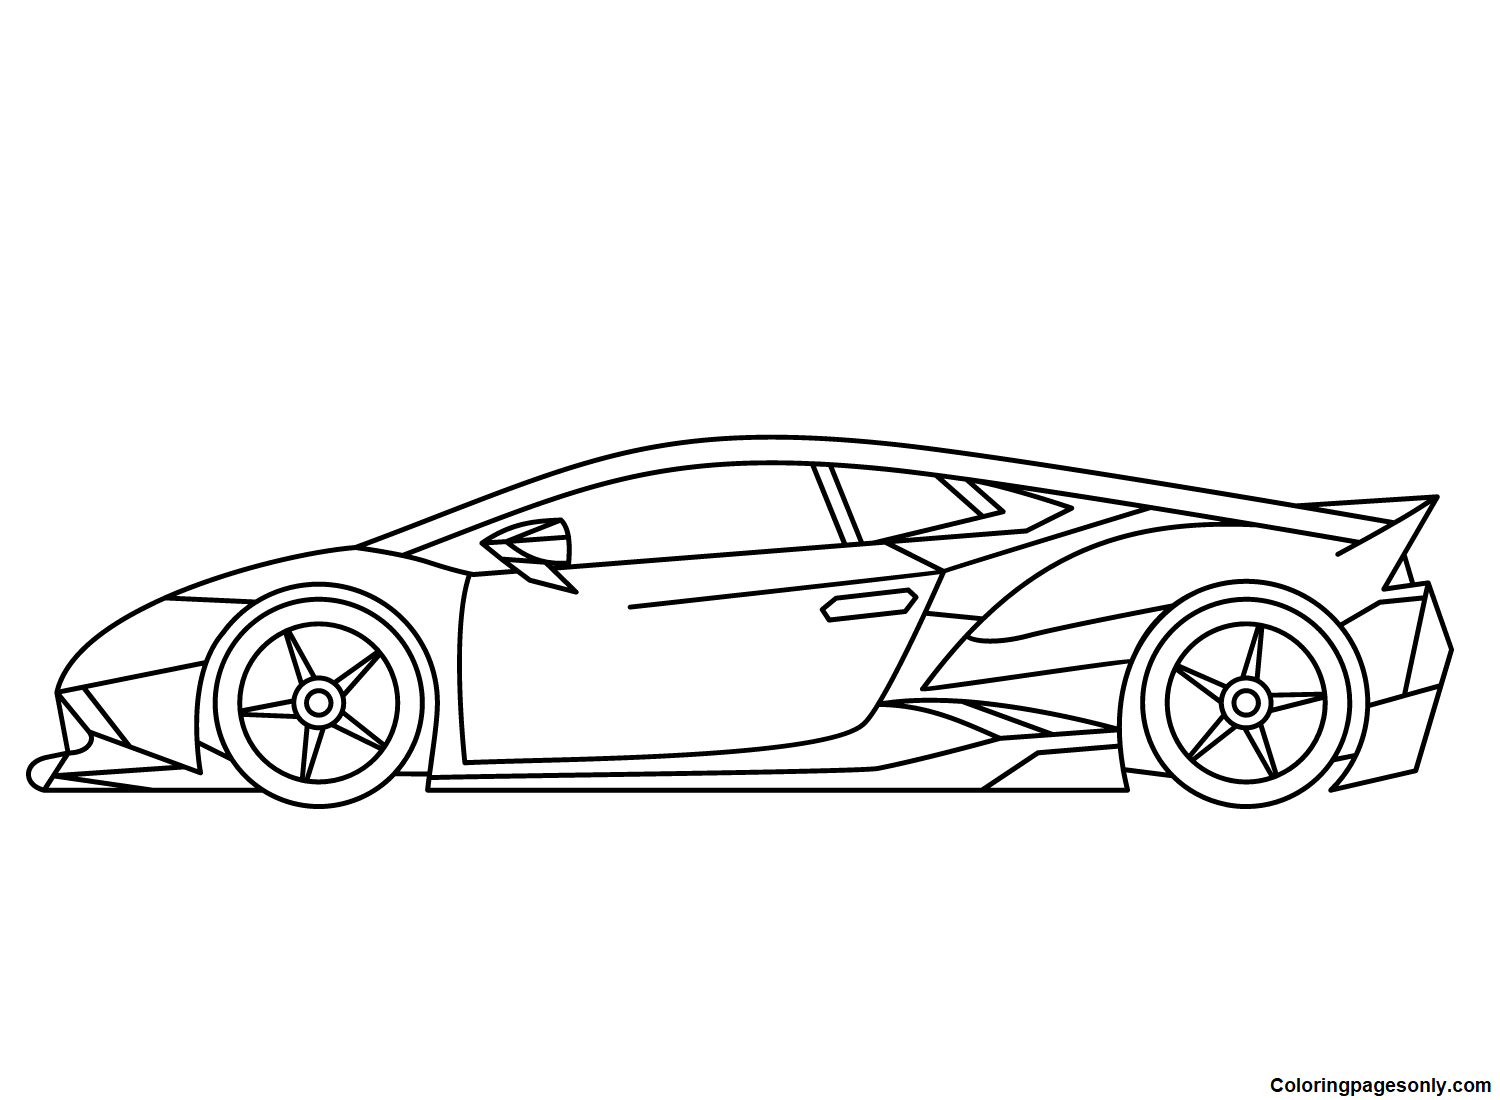 Dibujo de Lamborghini para colorear